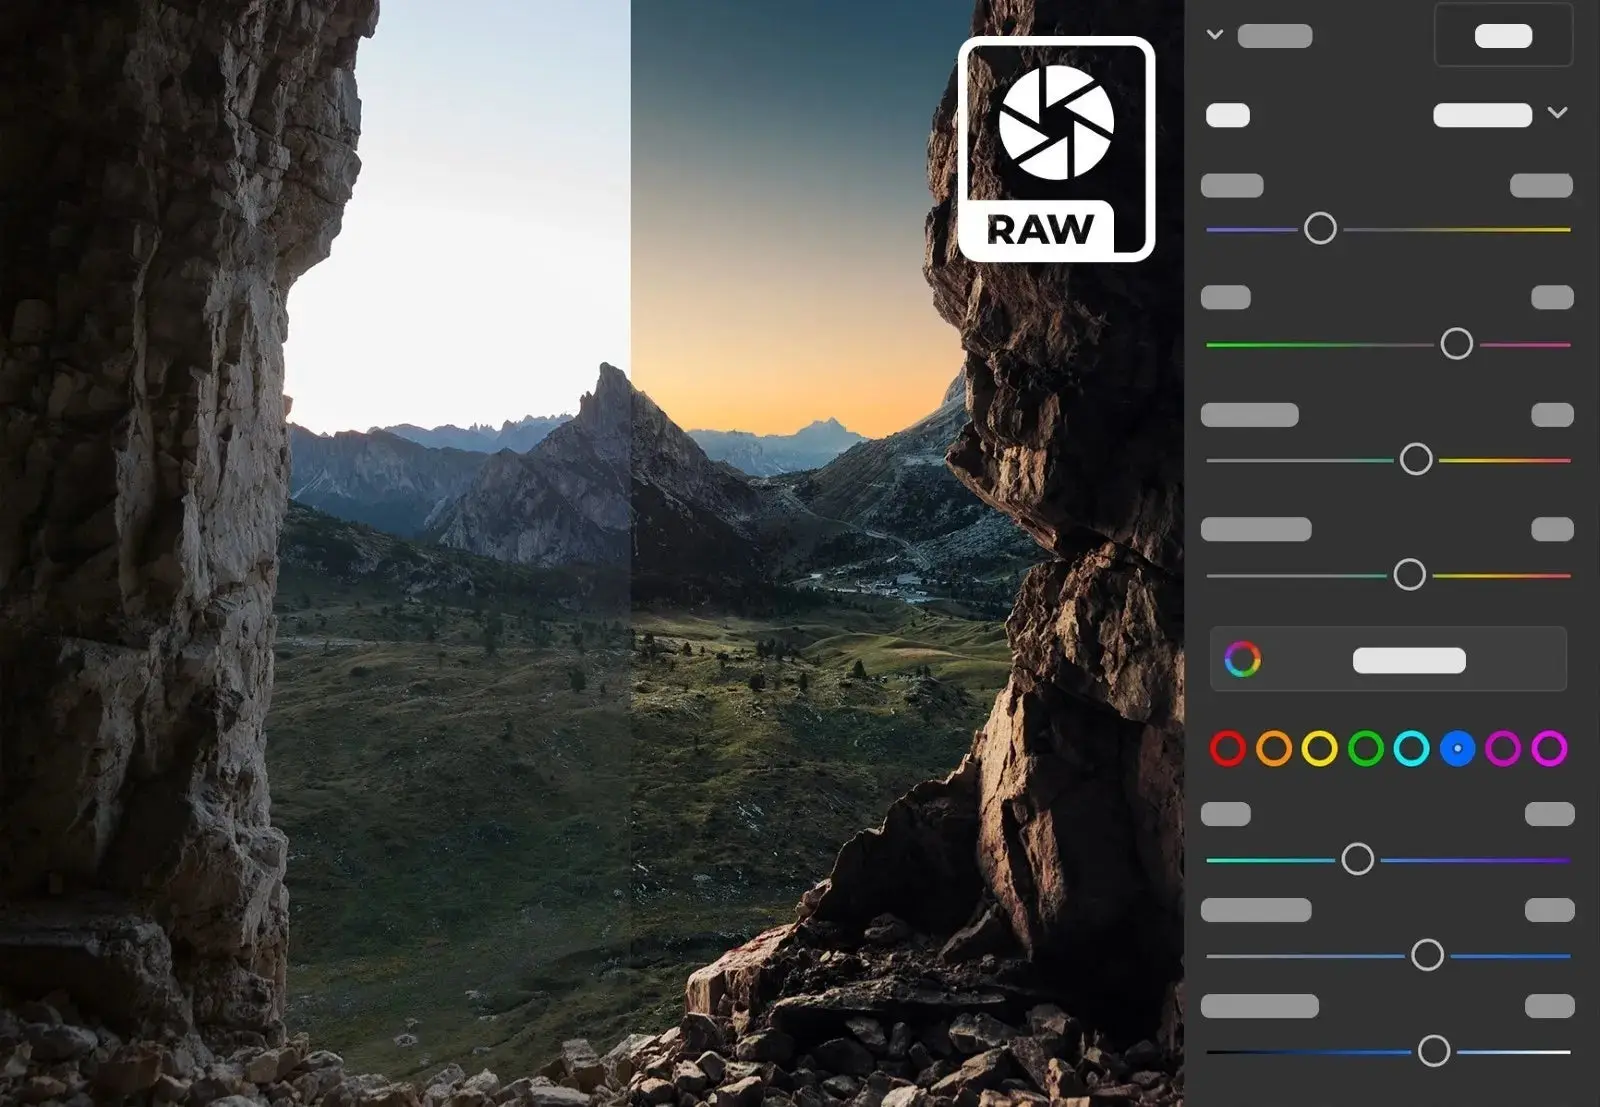 Interface do Photoshop no iPad com uma foto de uma paisagem de câmera raw